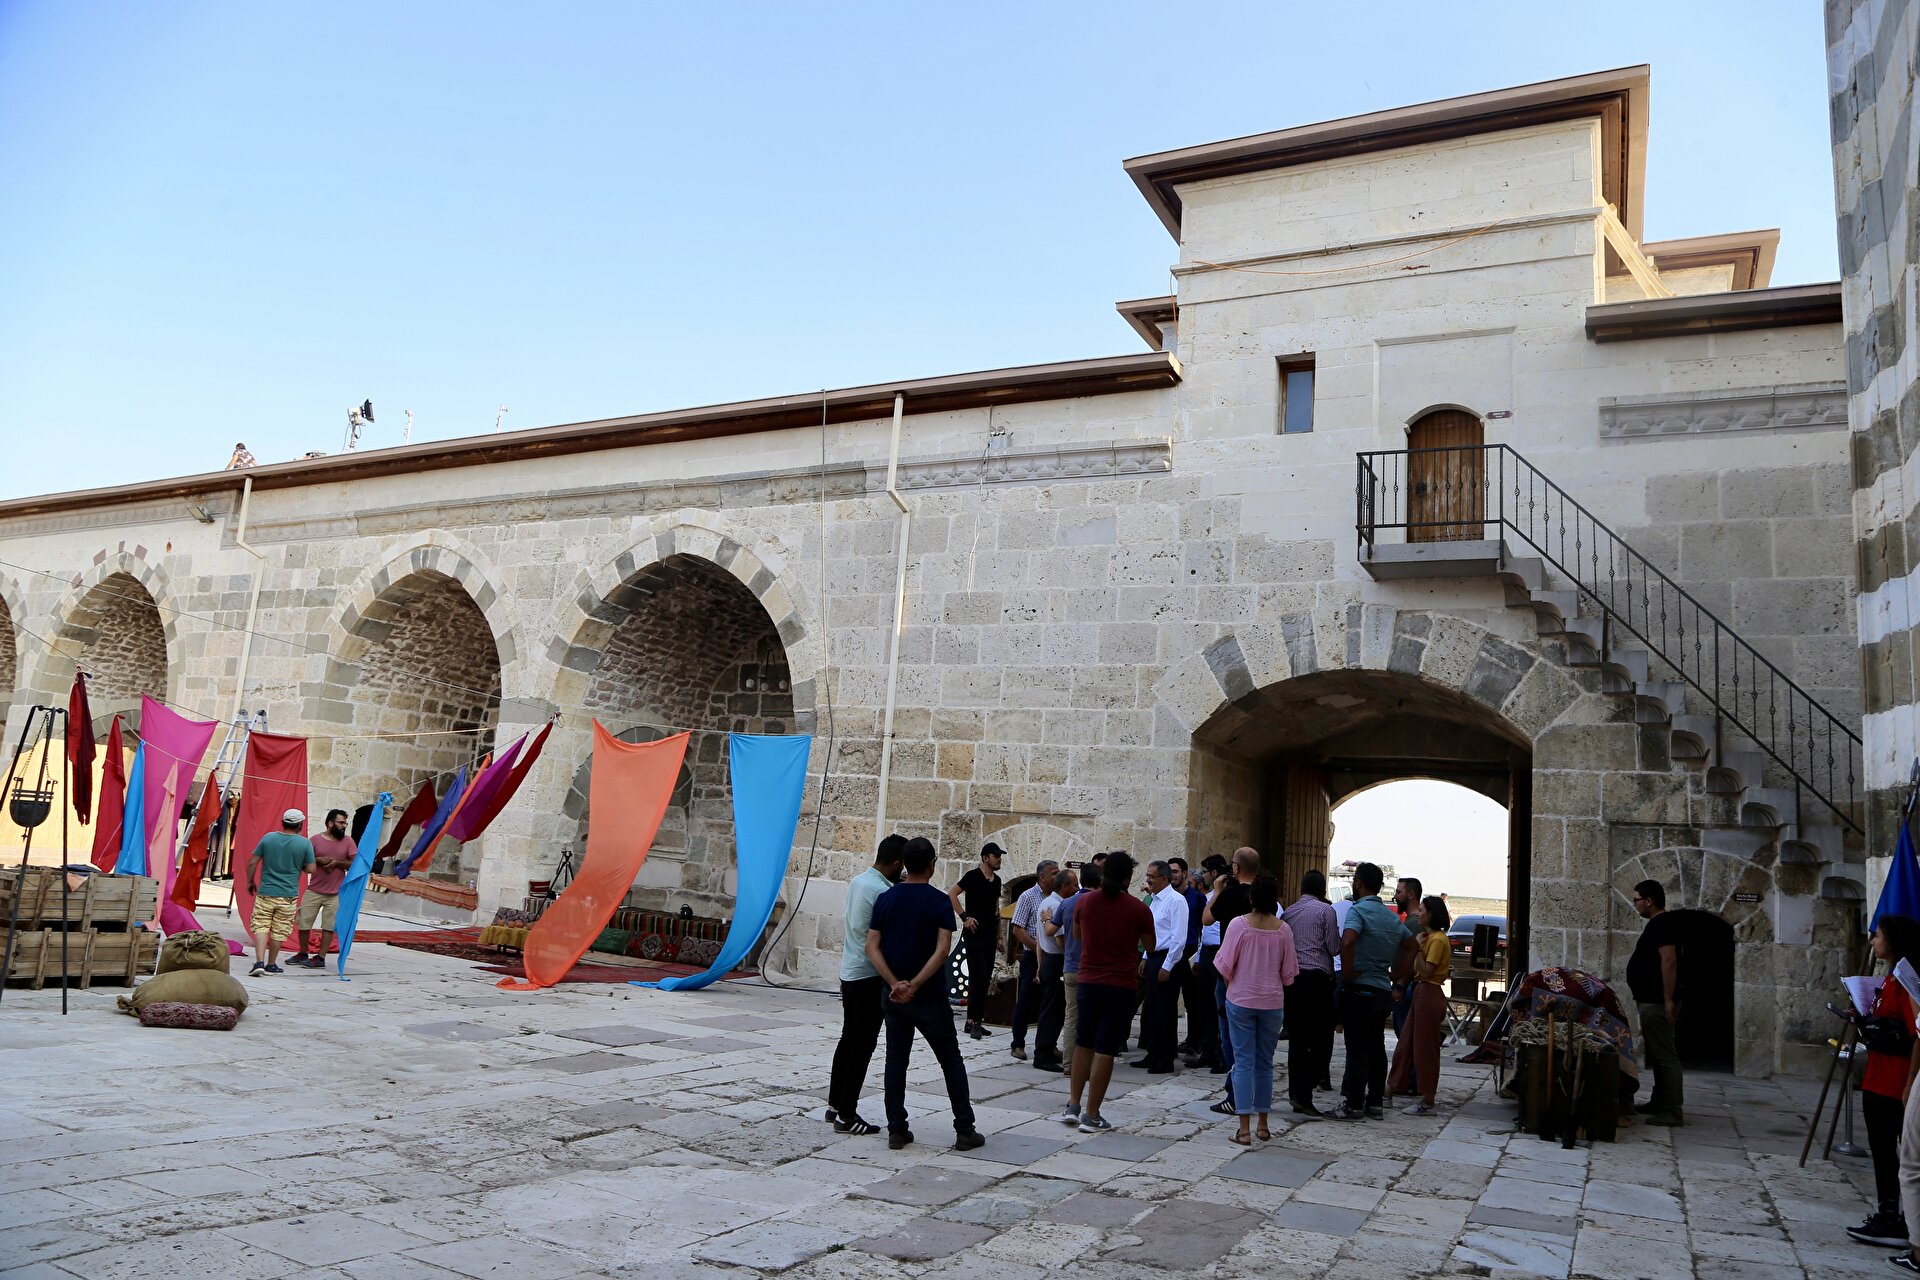 Turkey's ancient Zazadin Caravansary opens door to tourism